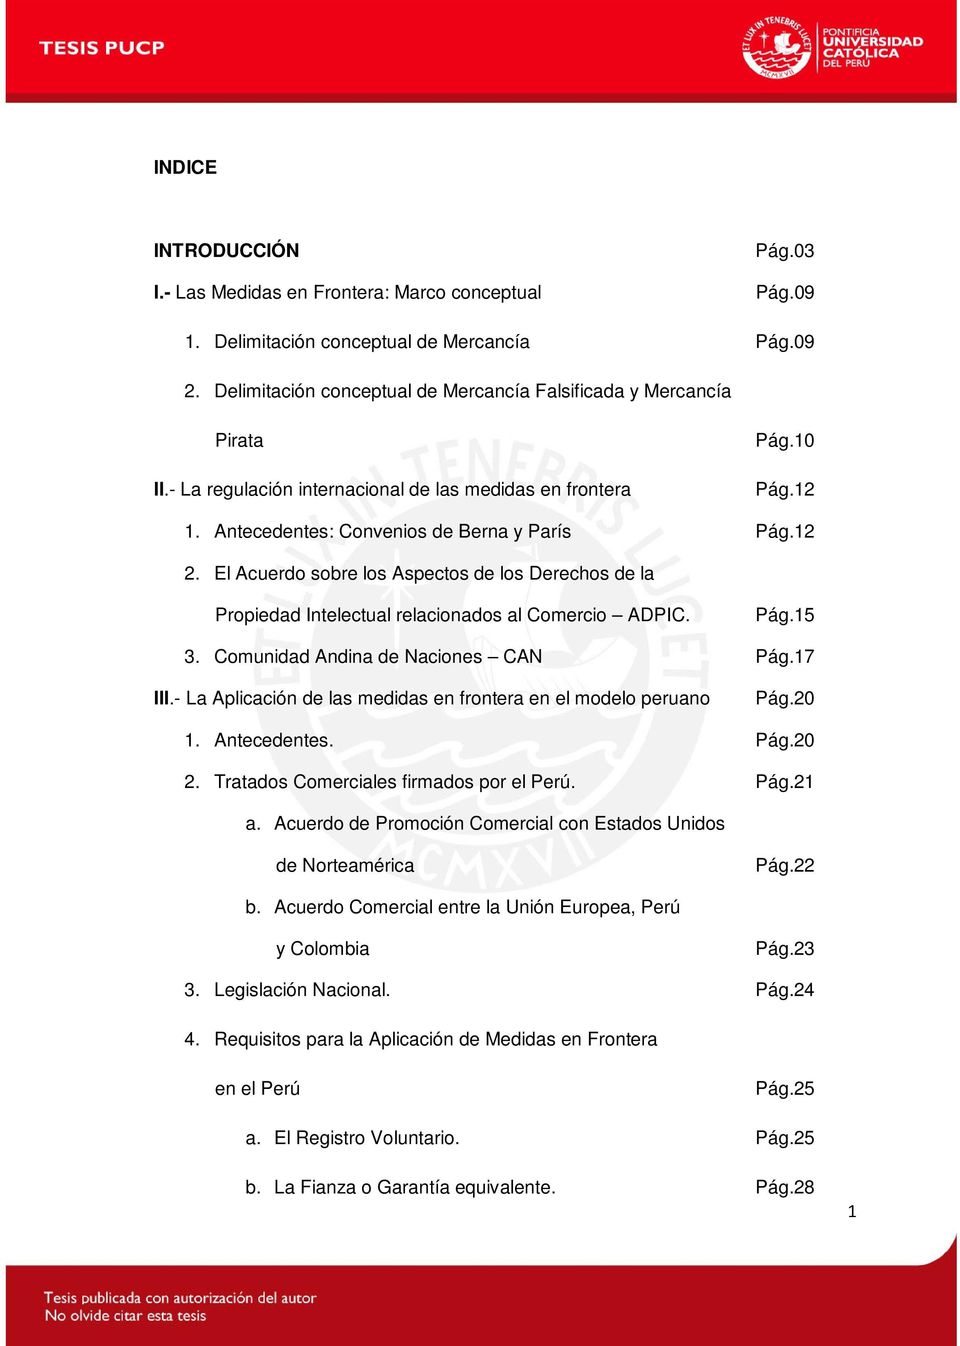 El Acuerdo sobre los Aspectos de los Derechos de la Propiedad Intelectual relacionados al Comercio ADPIC. Pág.15 3. Comunidad Andina de Naciones CAN Pág.17 III.